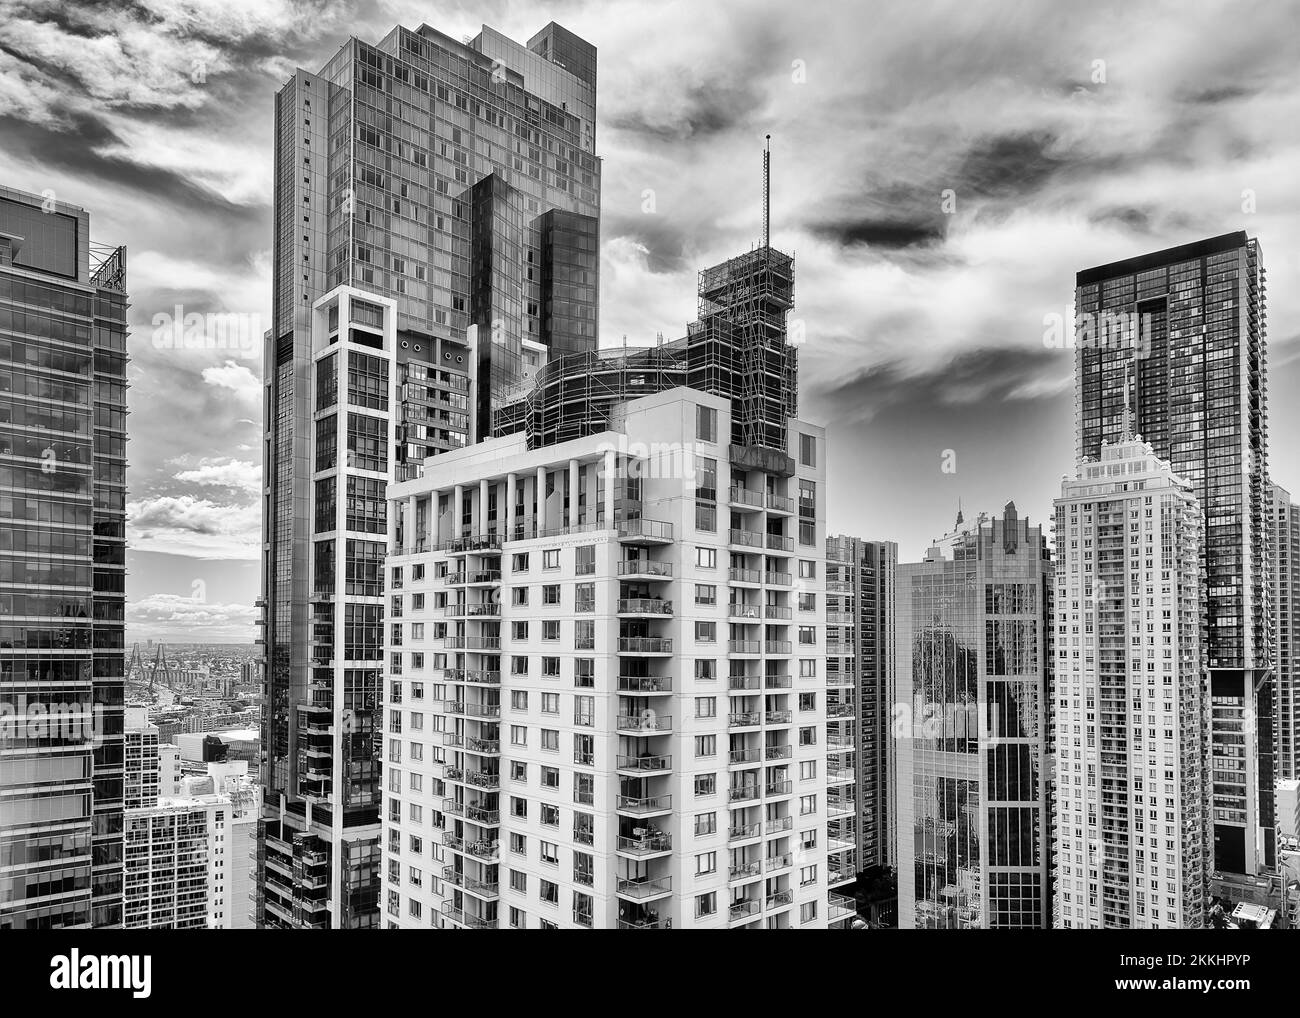 Kontrastreiche Aussicht auf die Innenstadt im zentralen Geschäftsviertel von Sydney – Hochhäuser mit Wohn- und Geschäftstürmen mitten unter blauem Himmel. Stockfoto